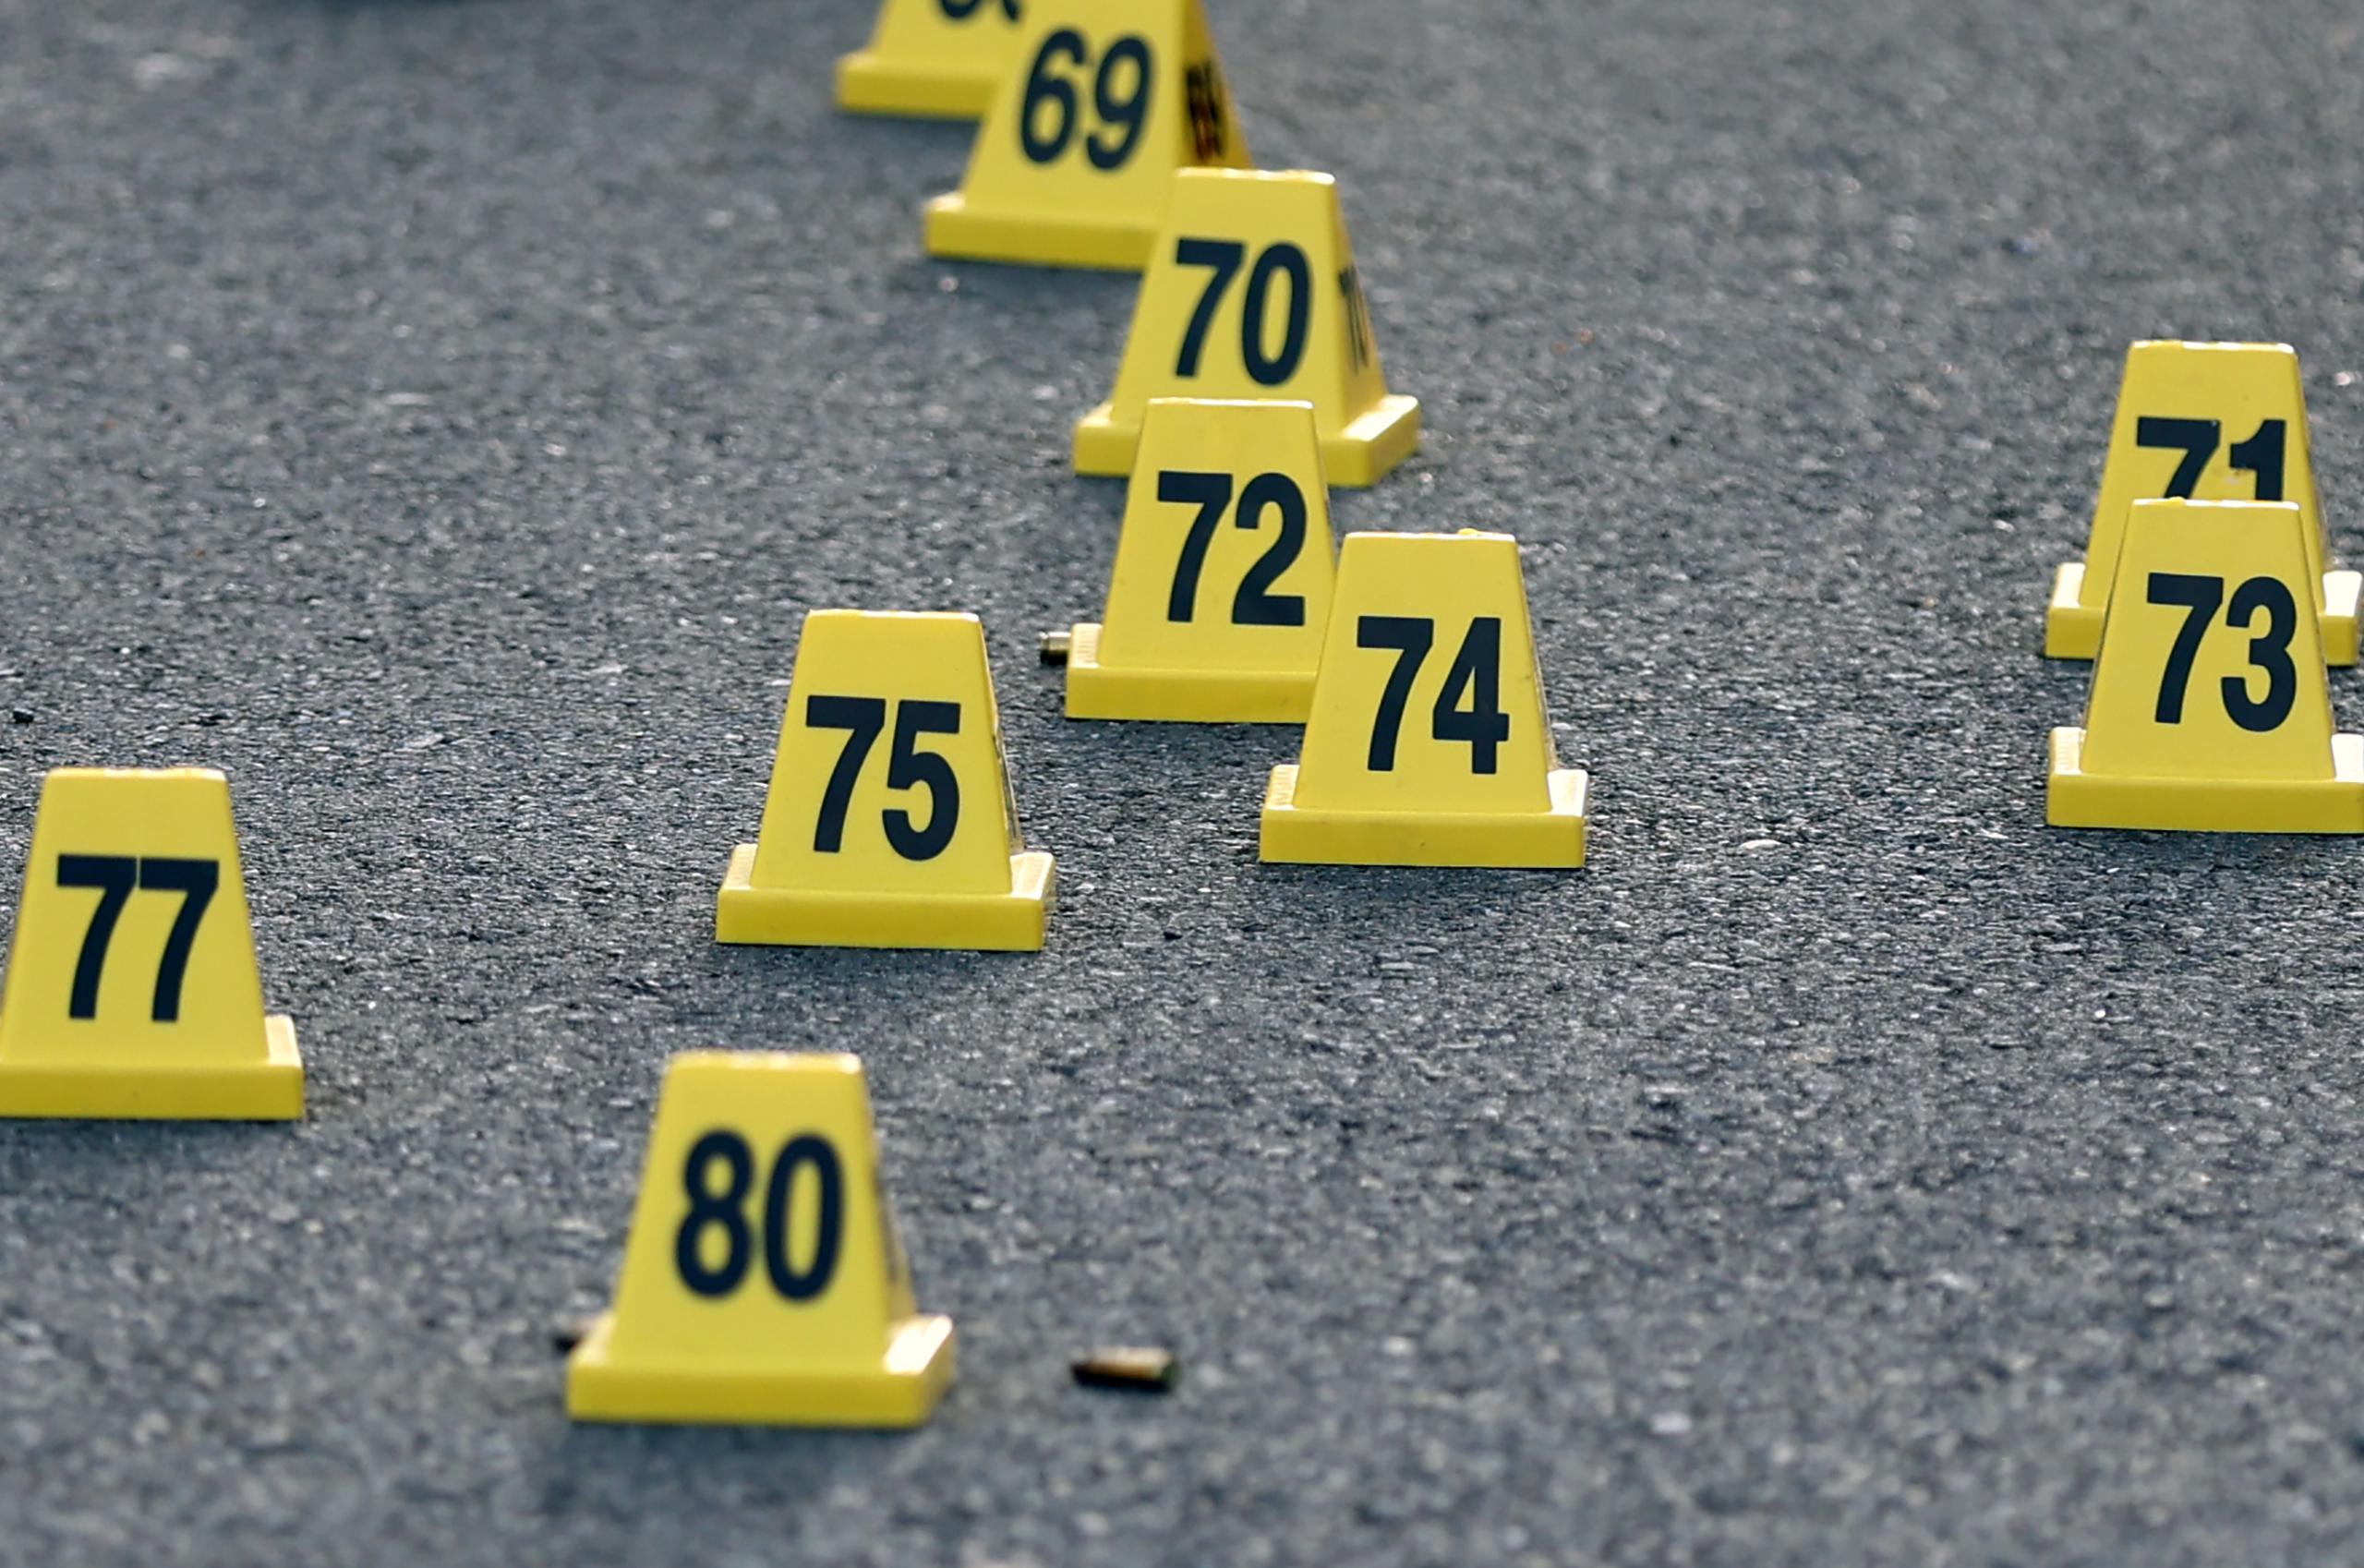 22 de octubre de 2023 - Casquillos de bala en escena de asesinato investigada por la Policía.